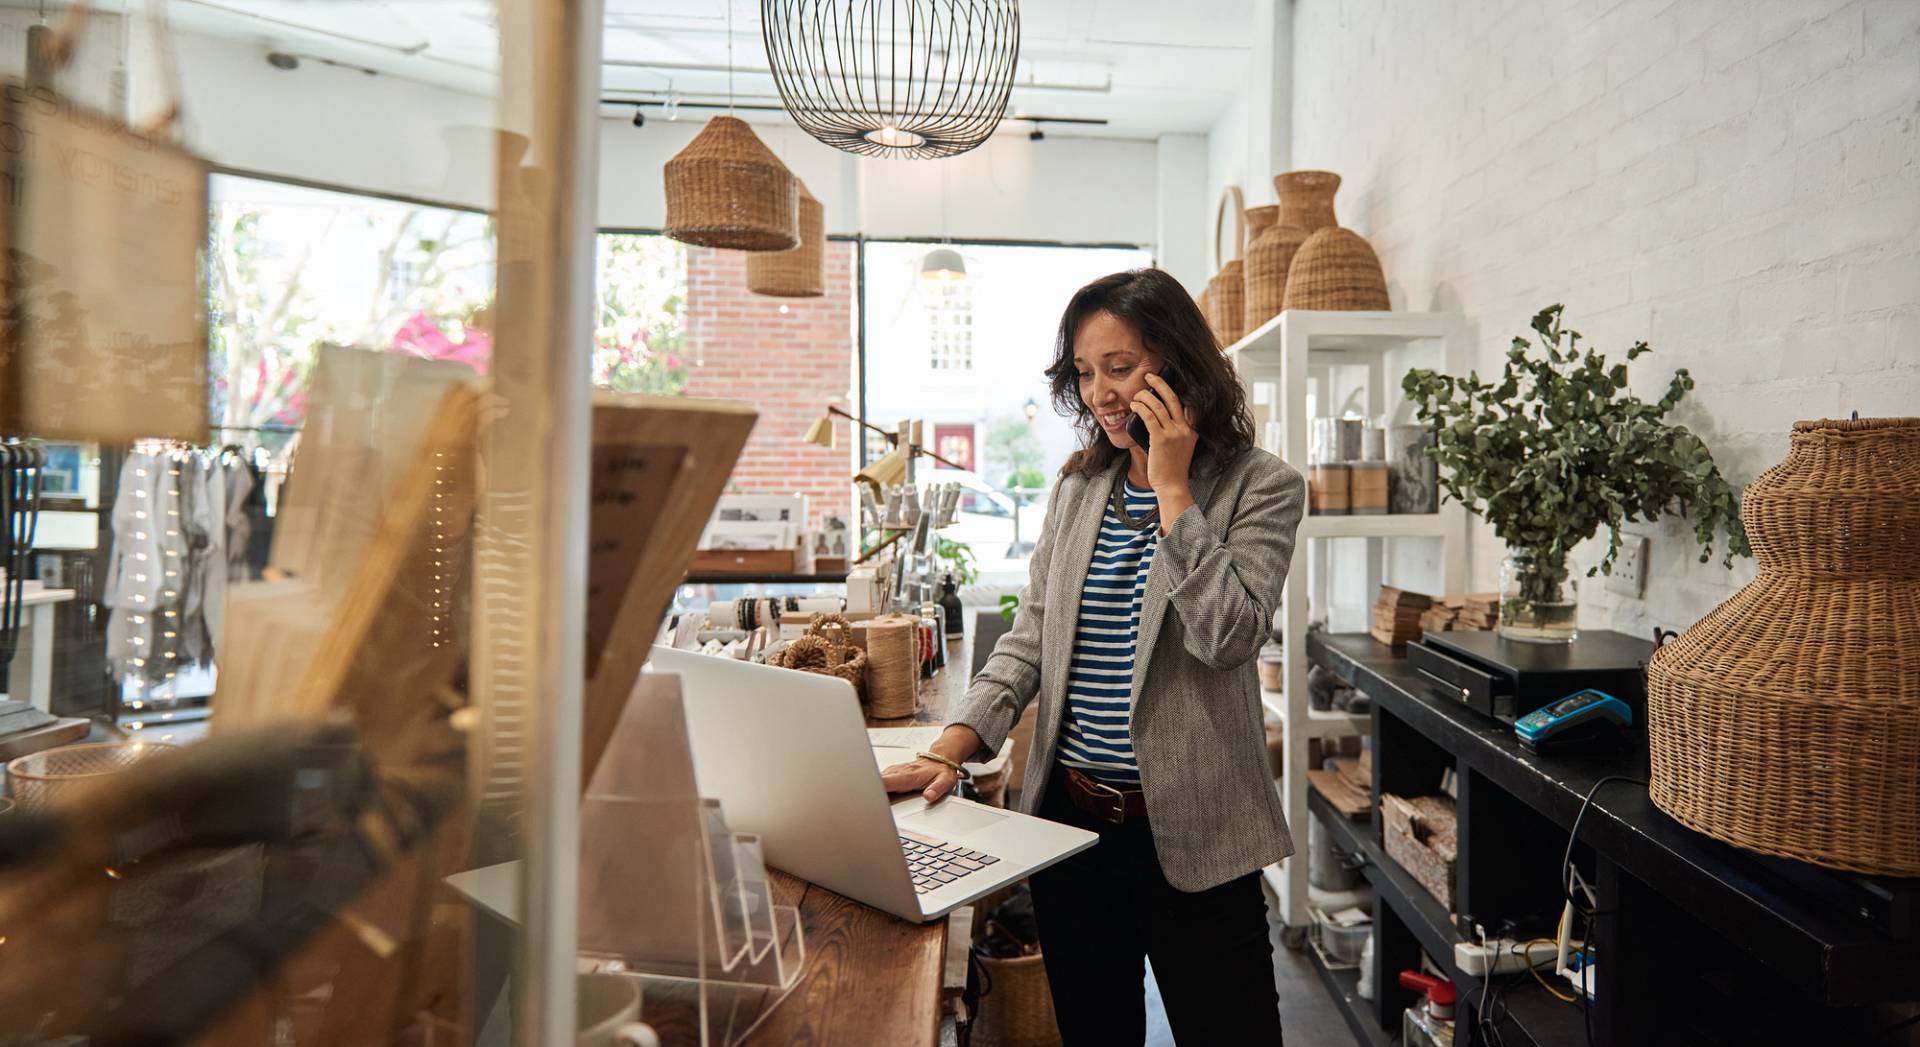 Kobieta pracuje w sklepie wielobranżowym i rozmawia przez telefon patrząc w laptopa